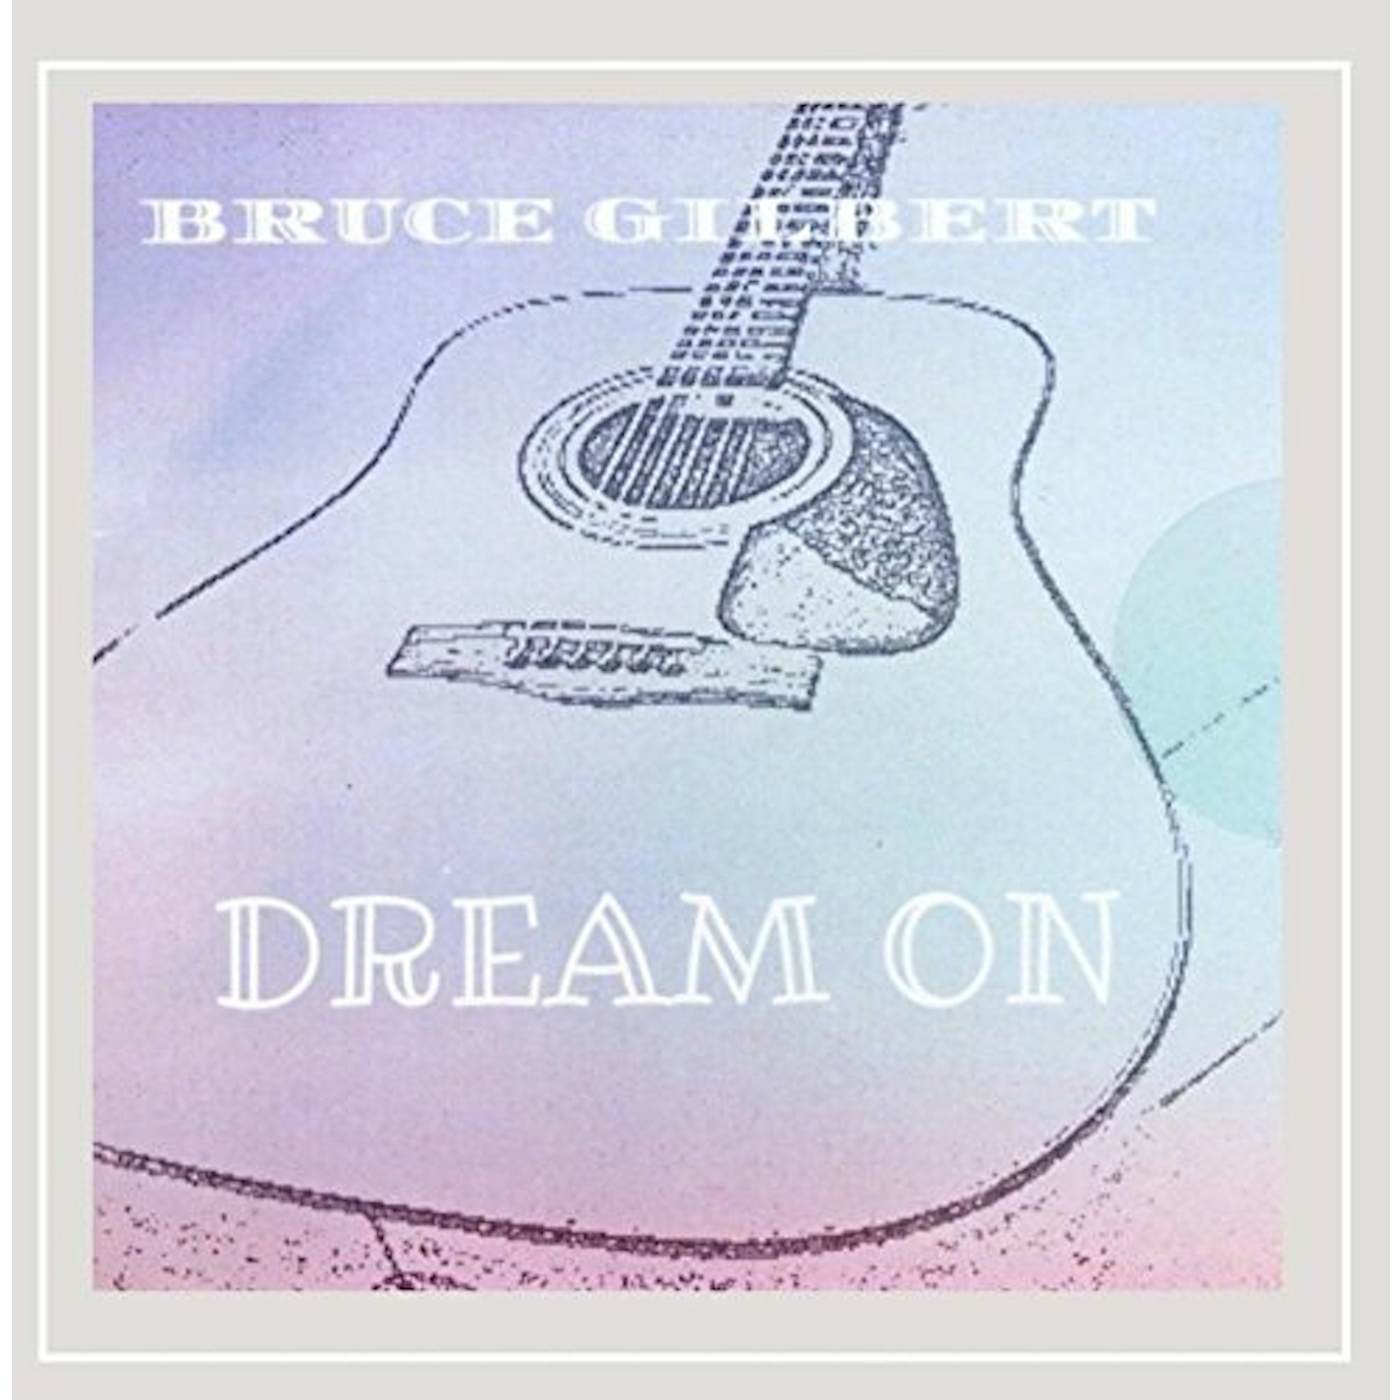 Bruce Gilbert DREAM ON CD